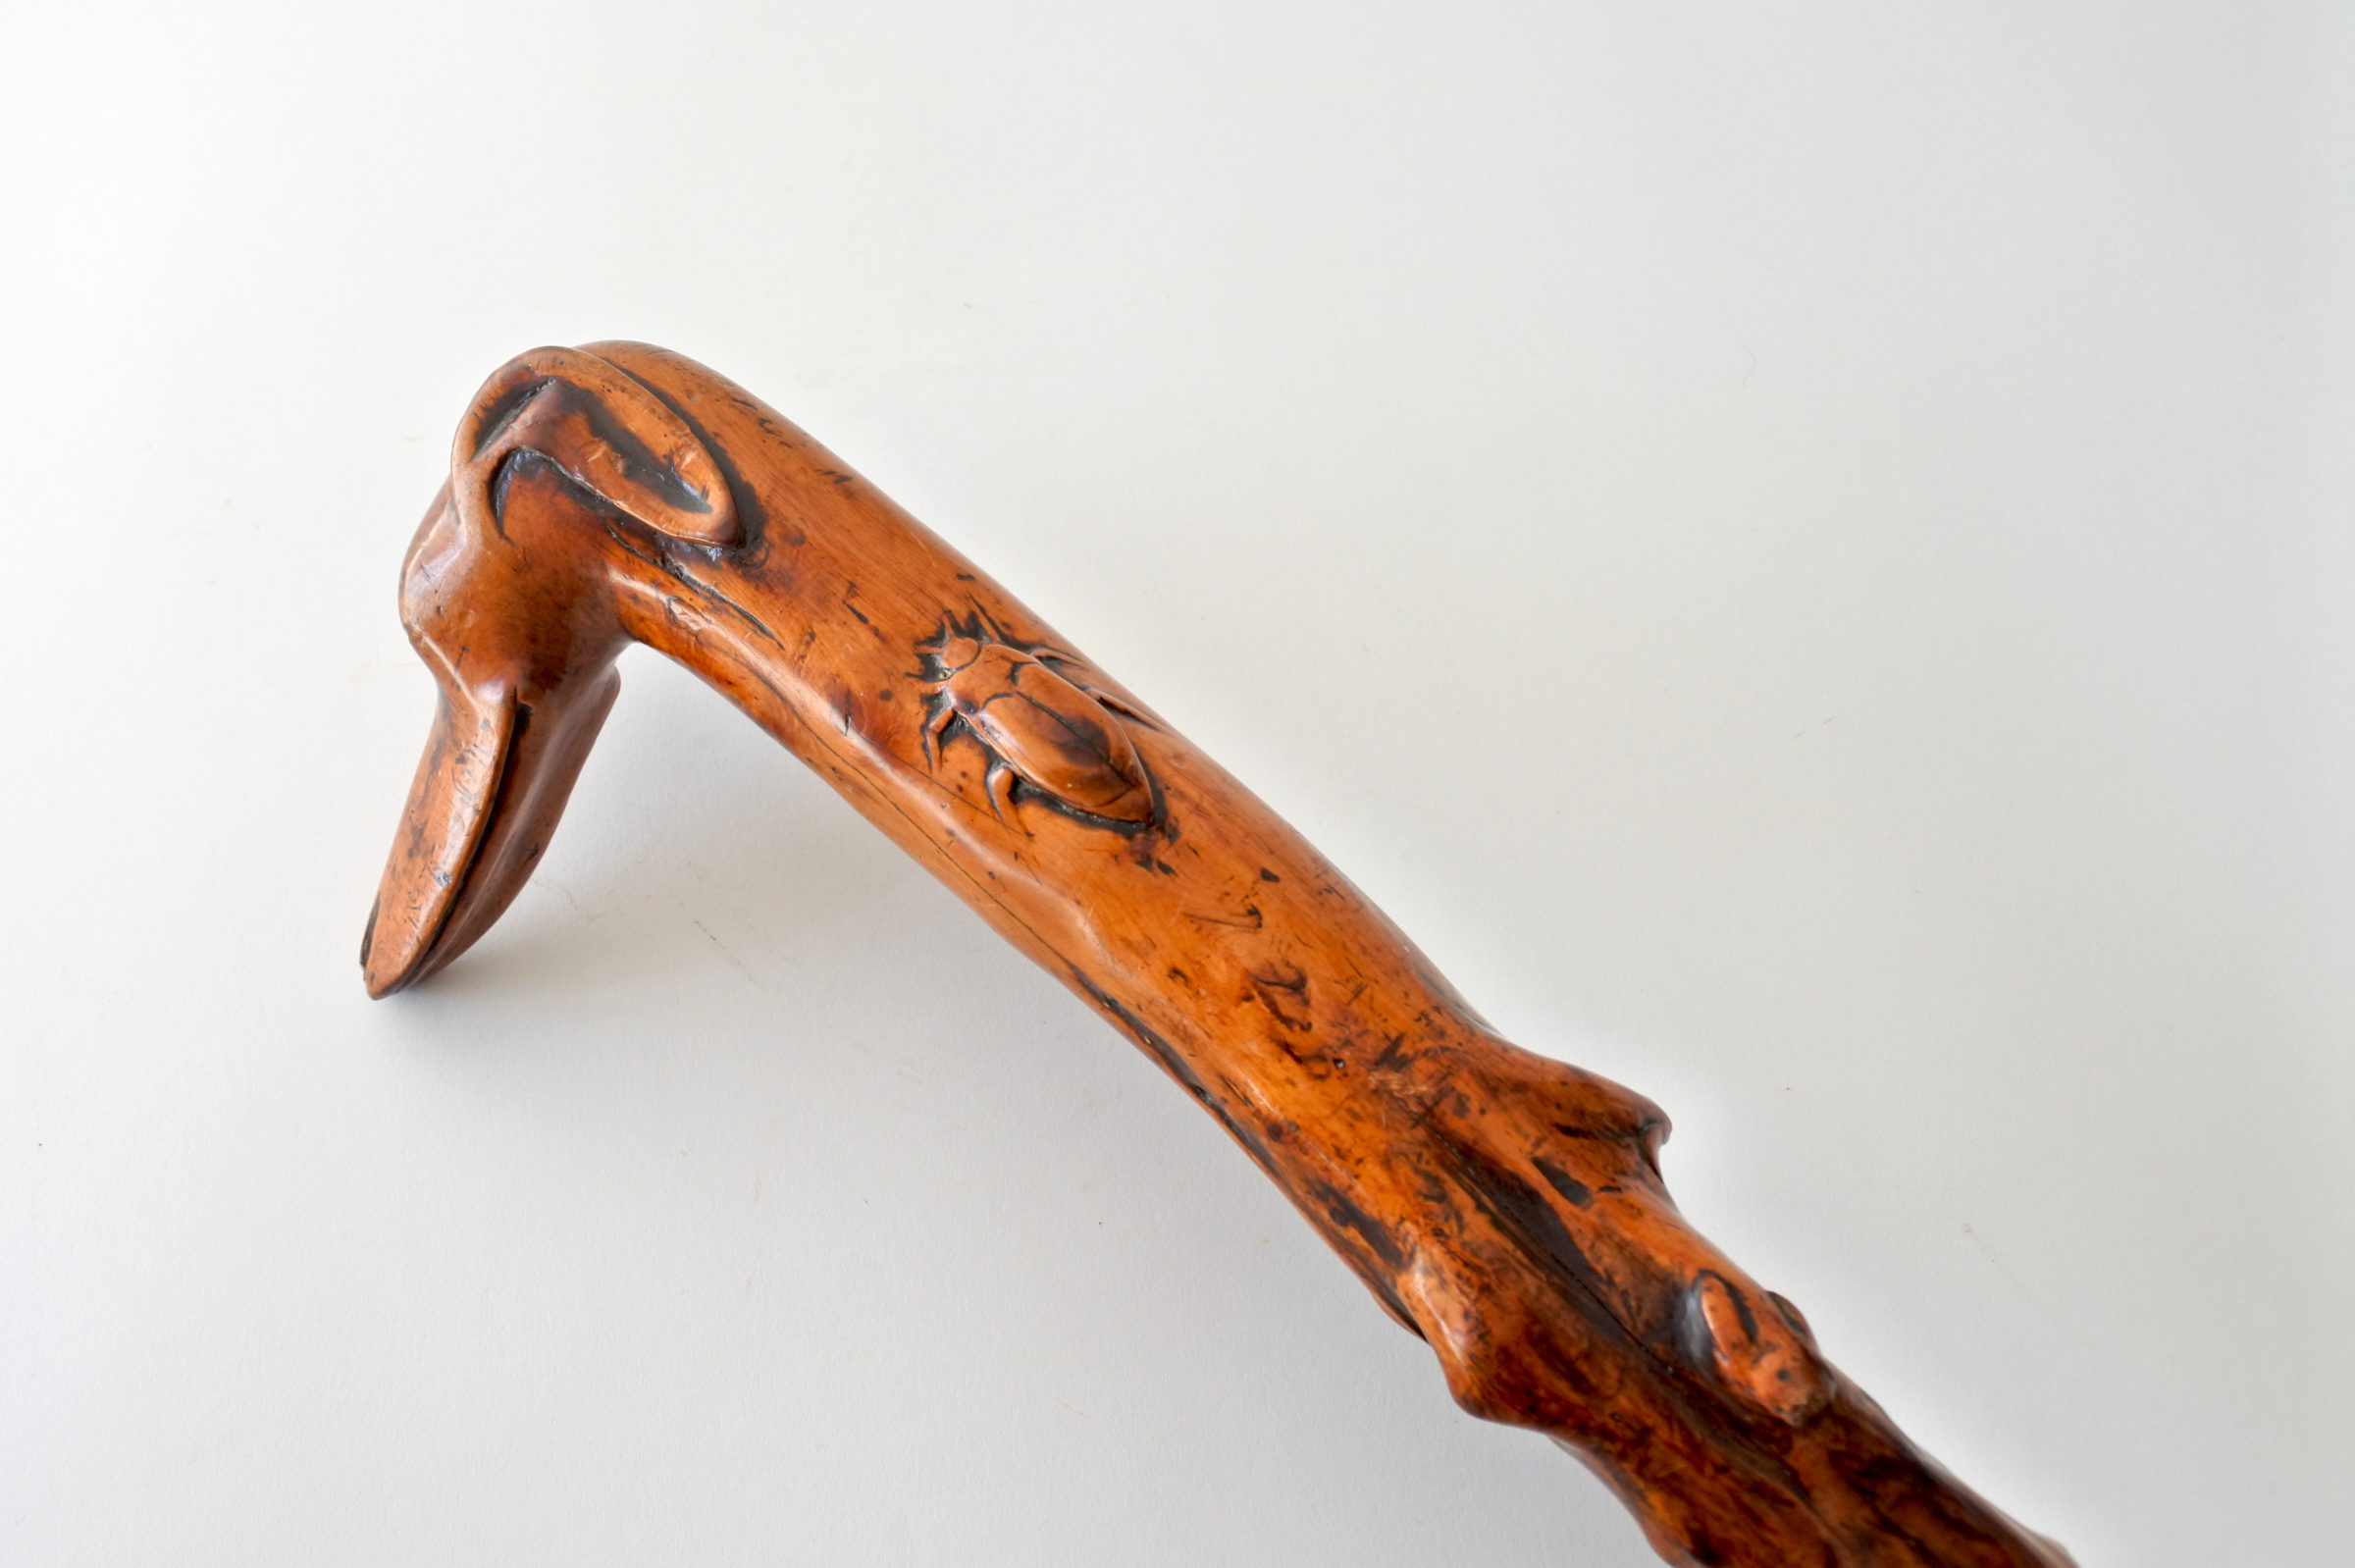 Bastone monossilo in legno scolpito con impugnatura a forma di testa di cane - 3